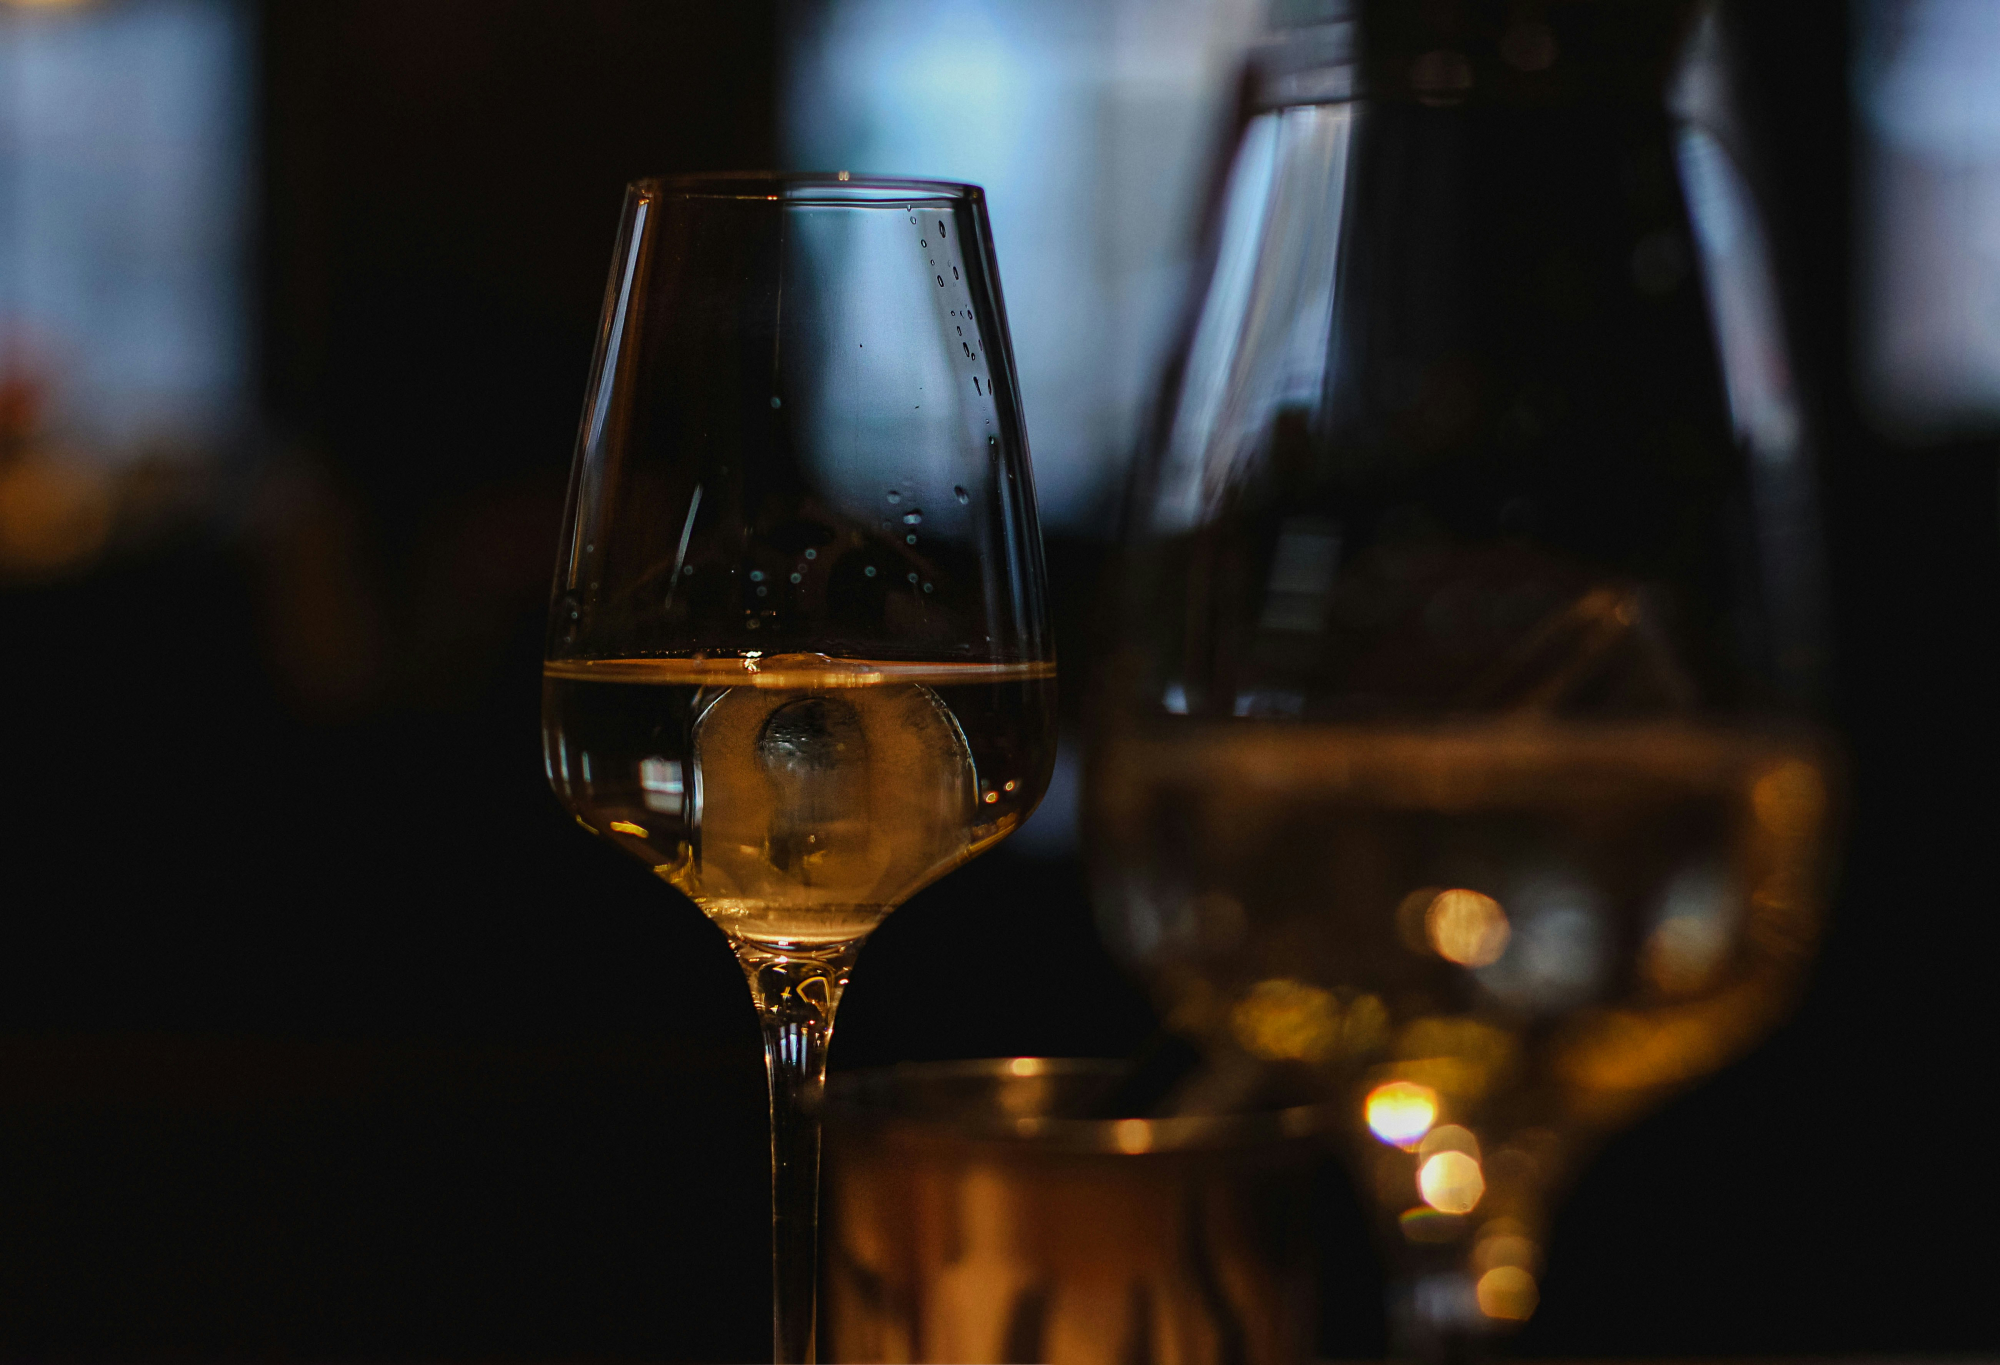 découvrez une sélection de vins blancs aux arômes subtils et délicats. savourez des notes fraîches et fruitées avec nos vins blancs de qualité supérieure.